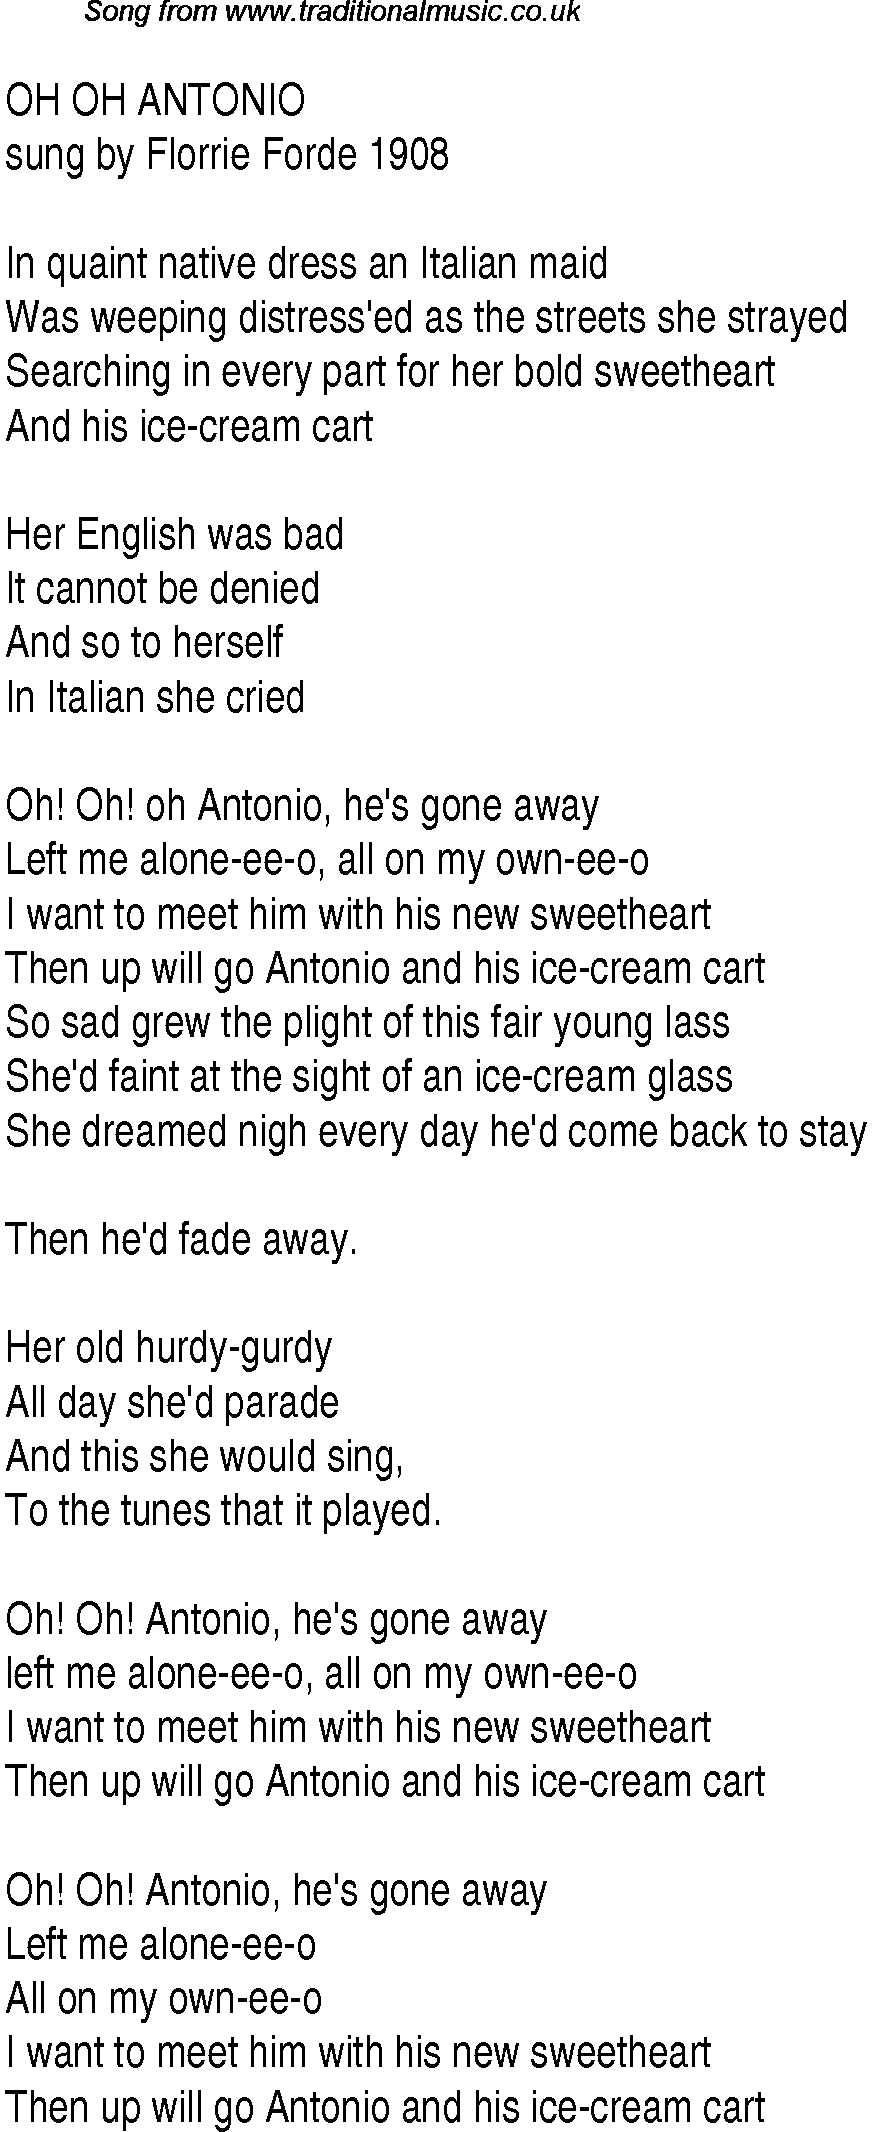 1940s top songs - lyrics for Oh Oh Antonio